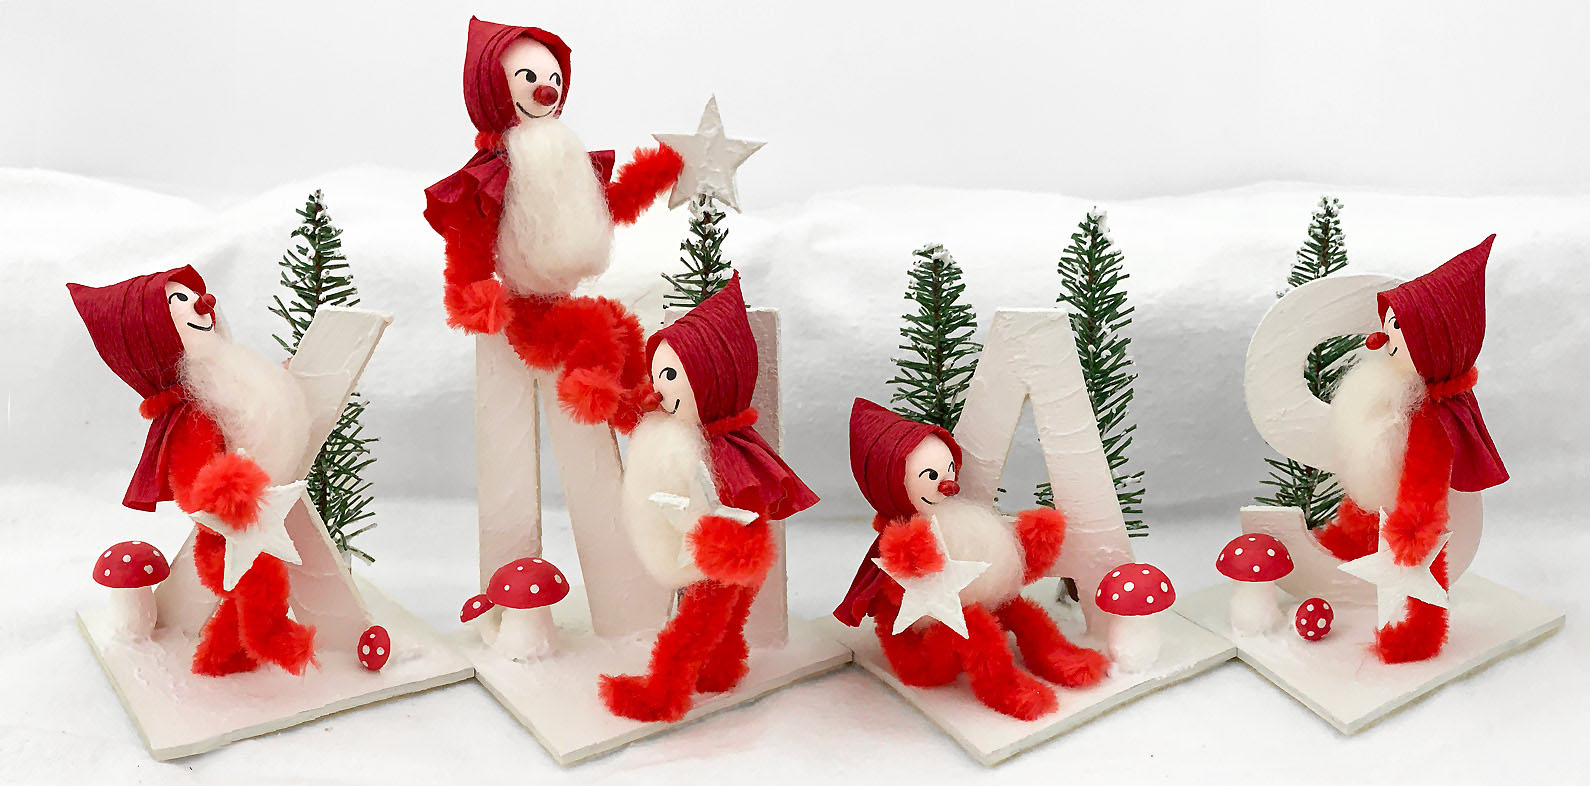 Christmas Craft Tutorial: Make a Retro Cake Pan Diorama